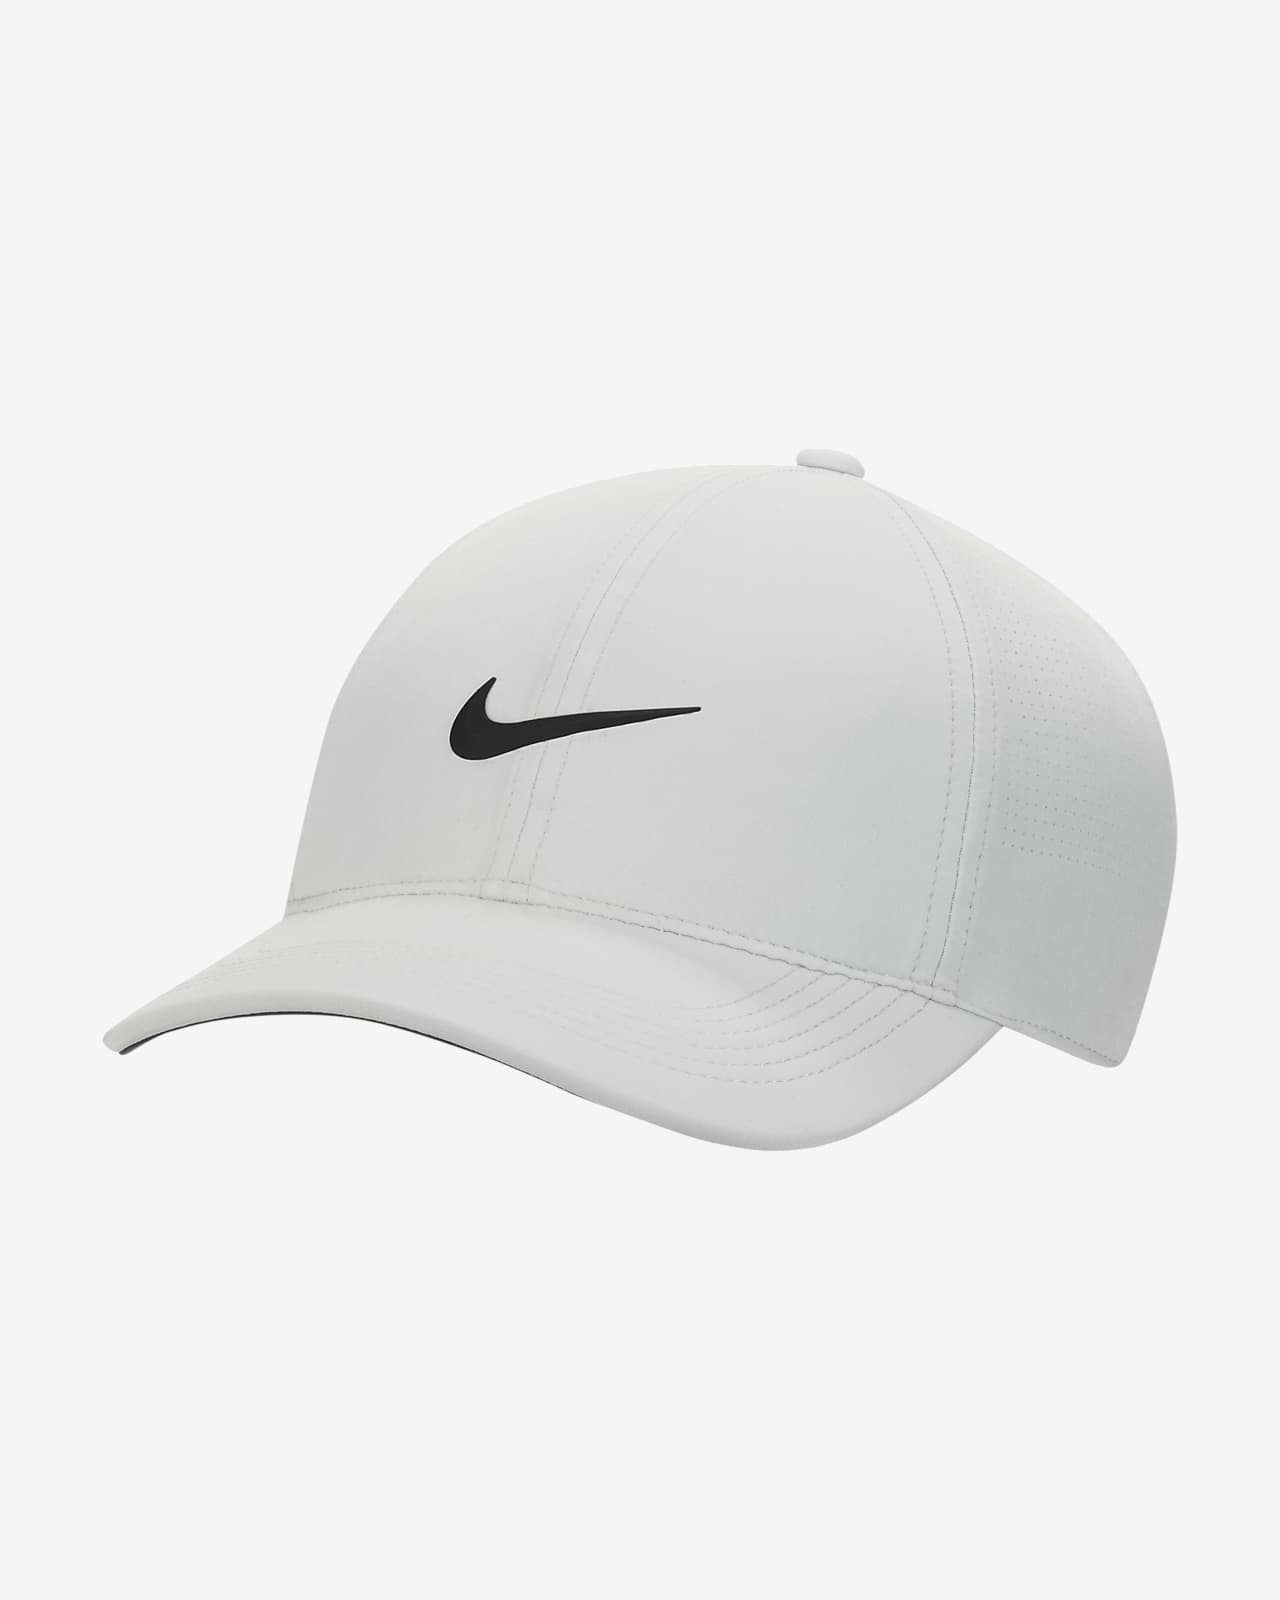 หมวกกอล์ฟมีรูระบายอากาศผู้หญิง Nike Dri-FIT ADV AeroBill Heritage86